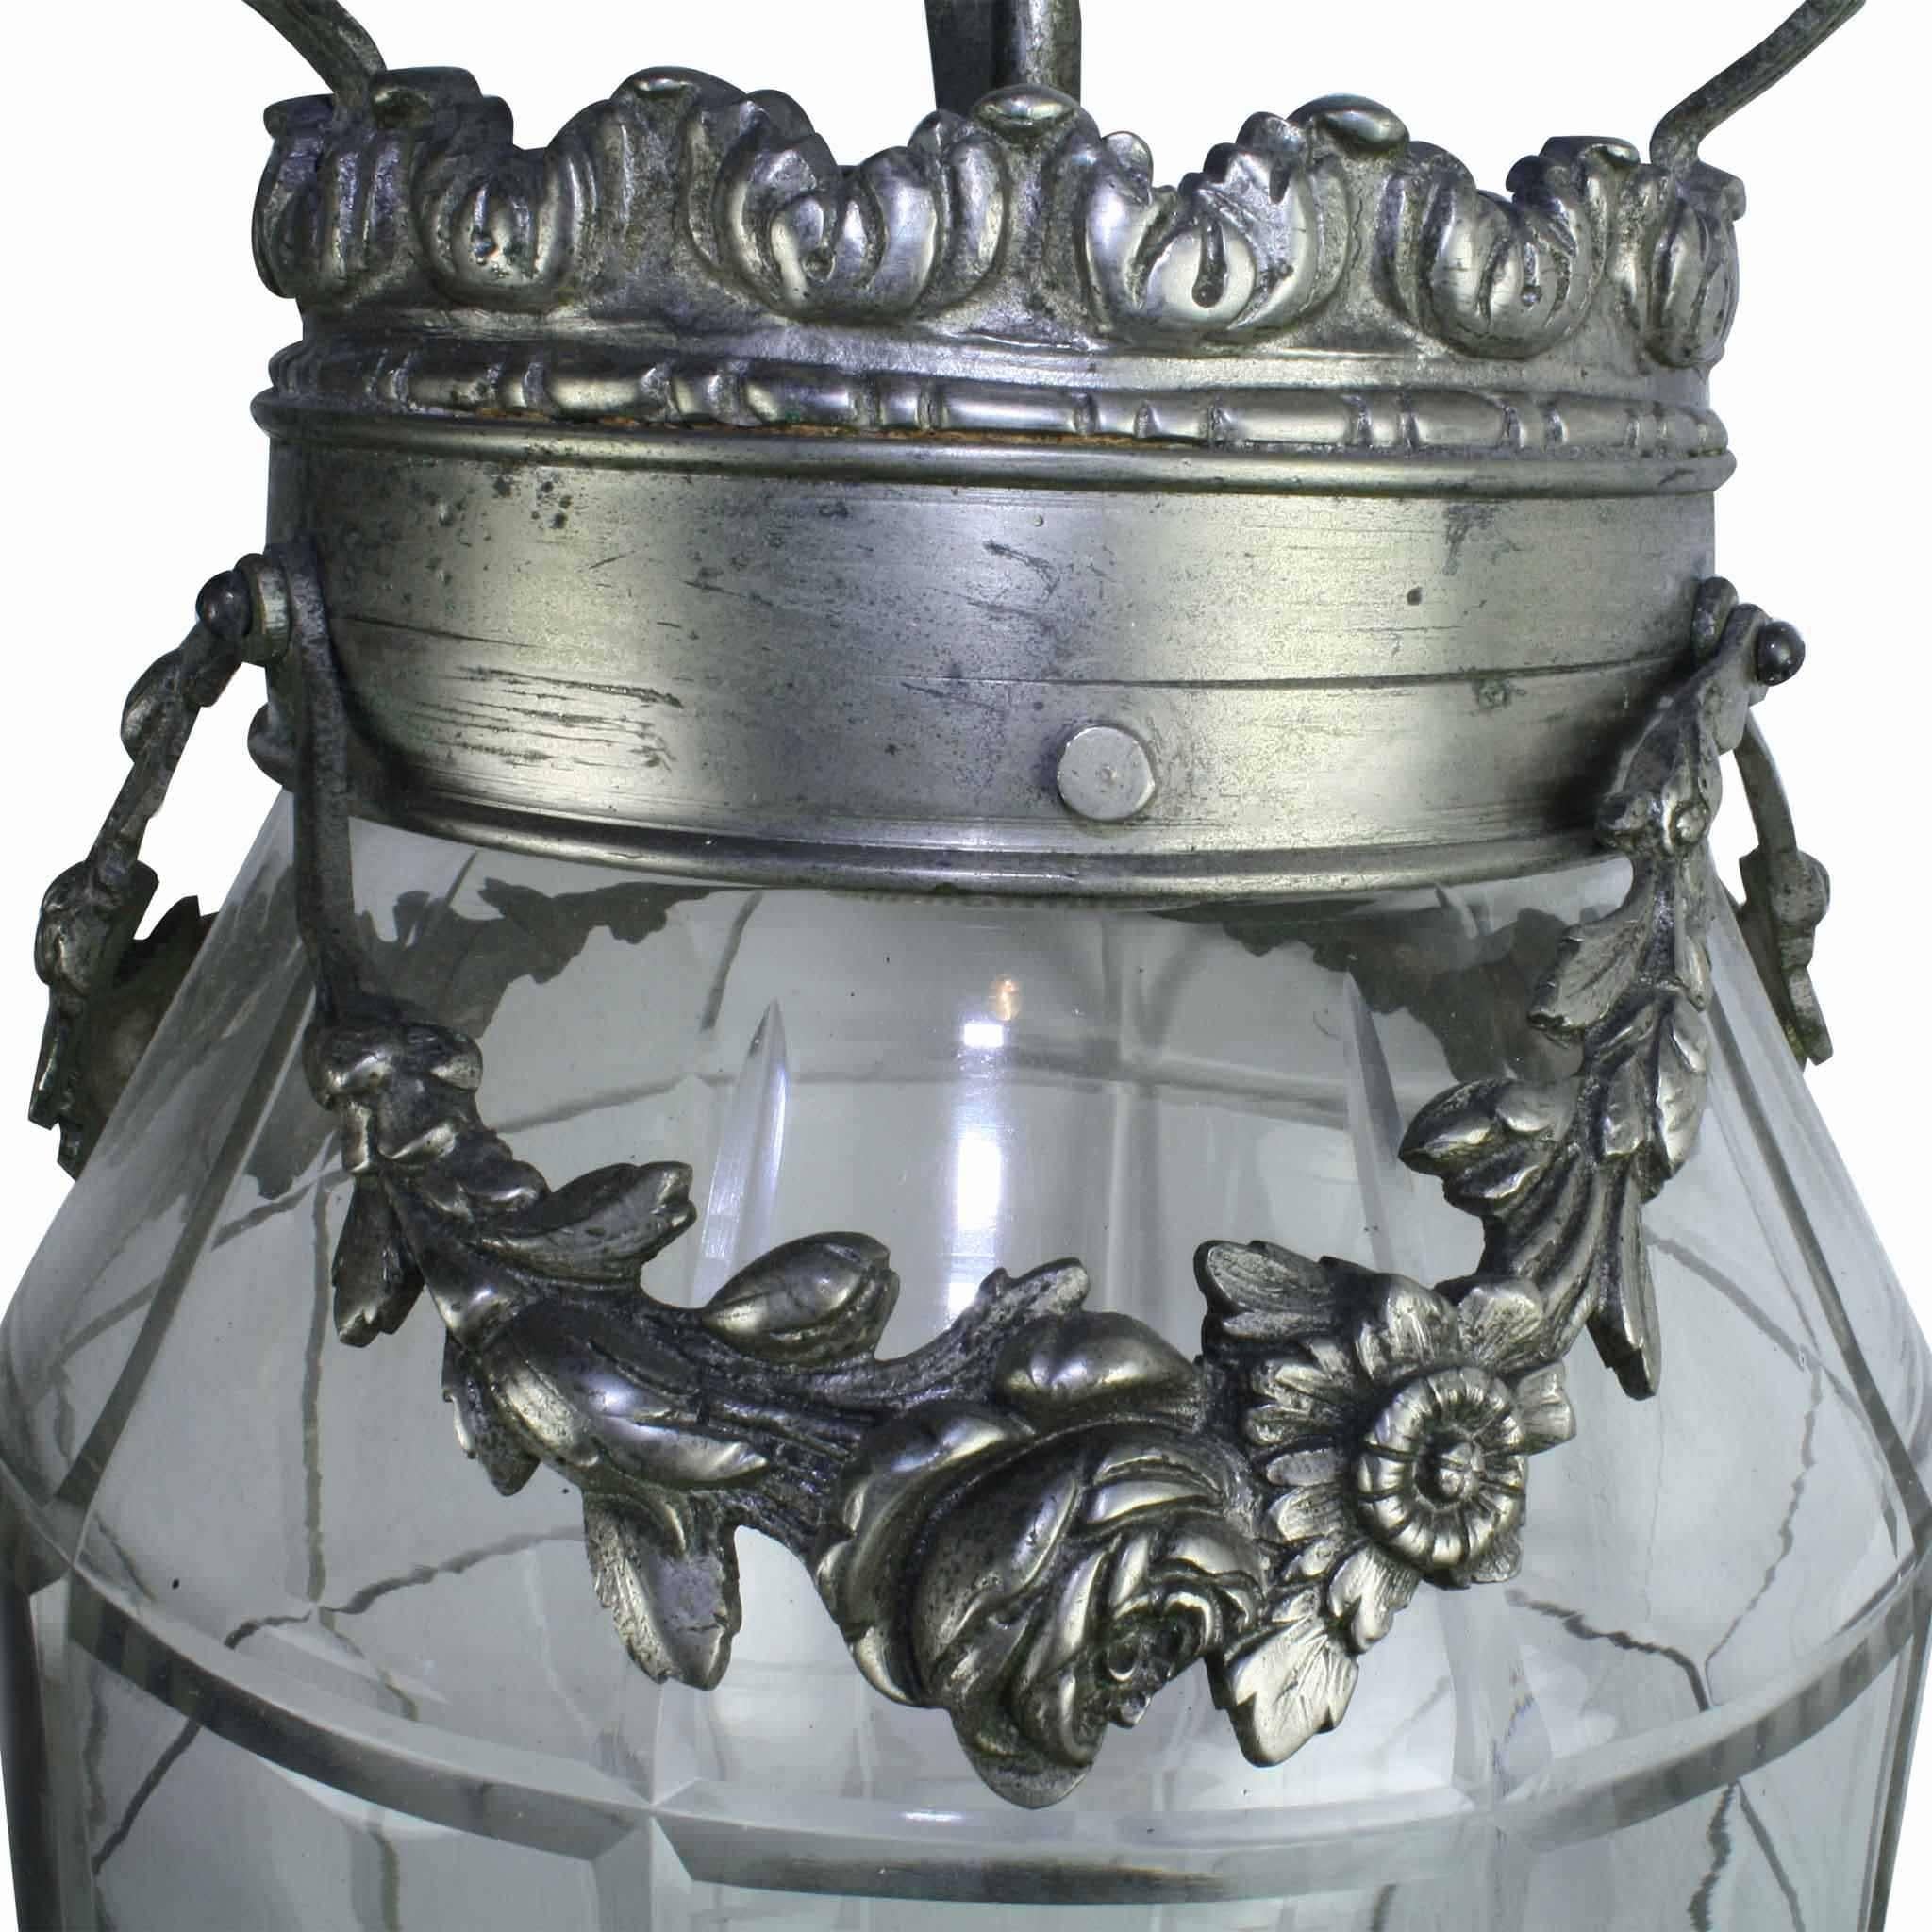 Couvrant les périodes stylistiques Art Déco et Art Nouveau, cette lanterne présente une vigne florale qui tombe en lignes gracieuses autour de la couronne supérieure. La lanterne est dotée d'un dais décoratif et d'une chaîne. Un épi de faîtage orné